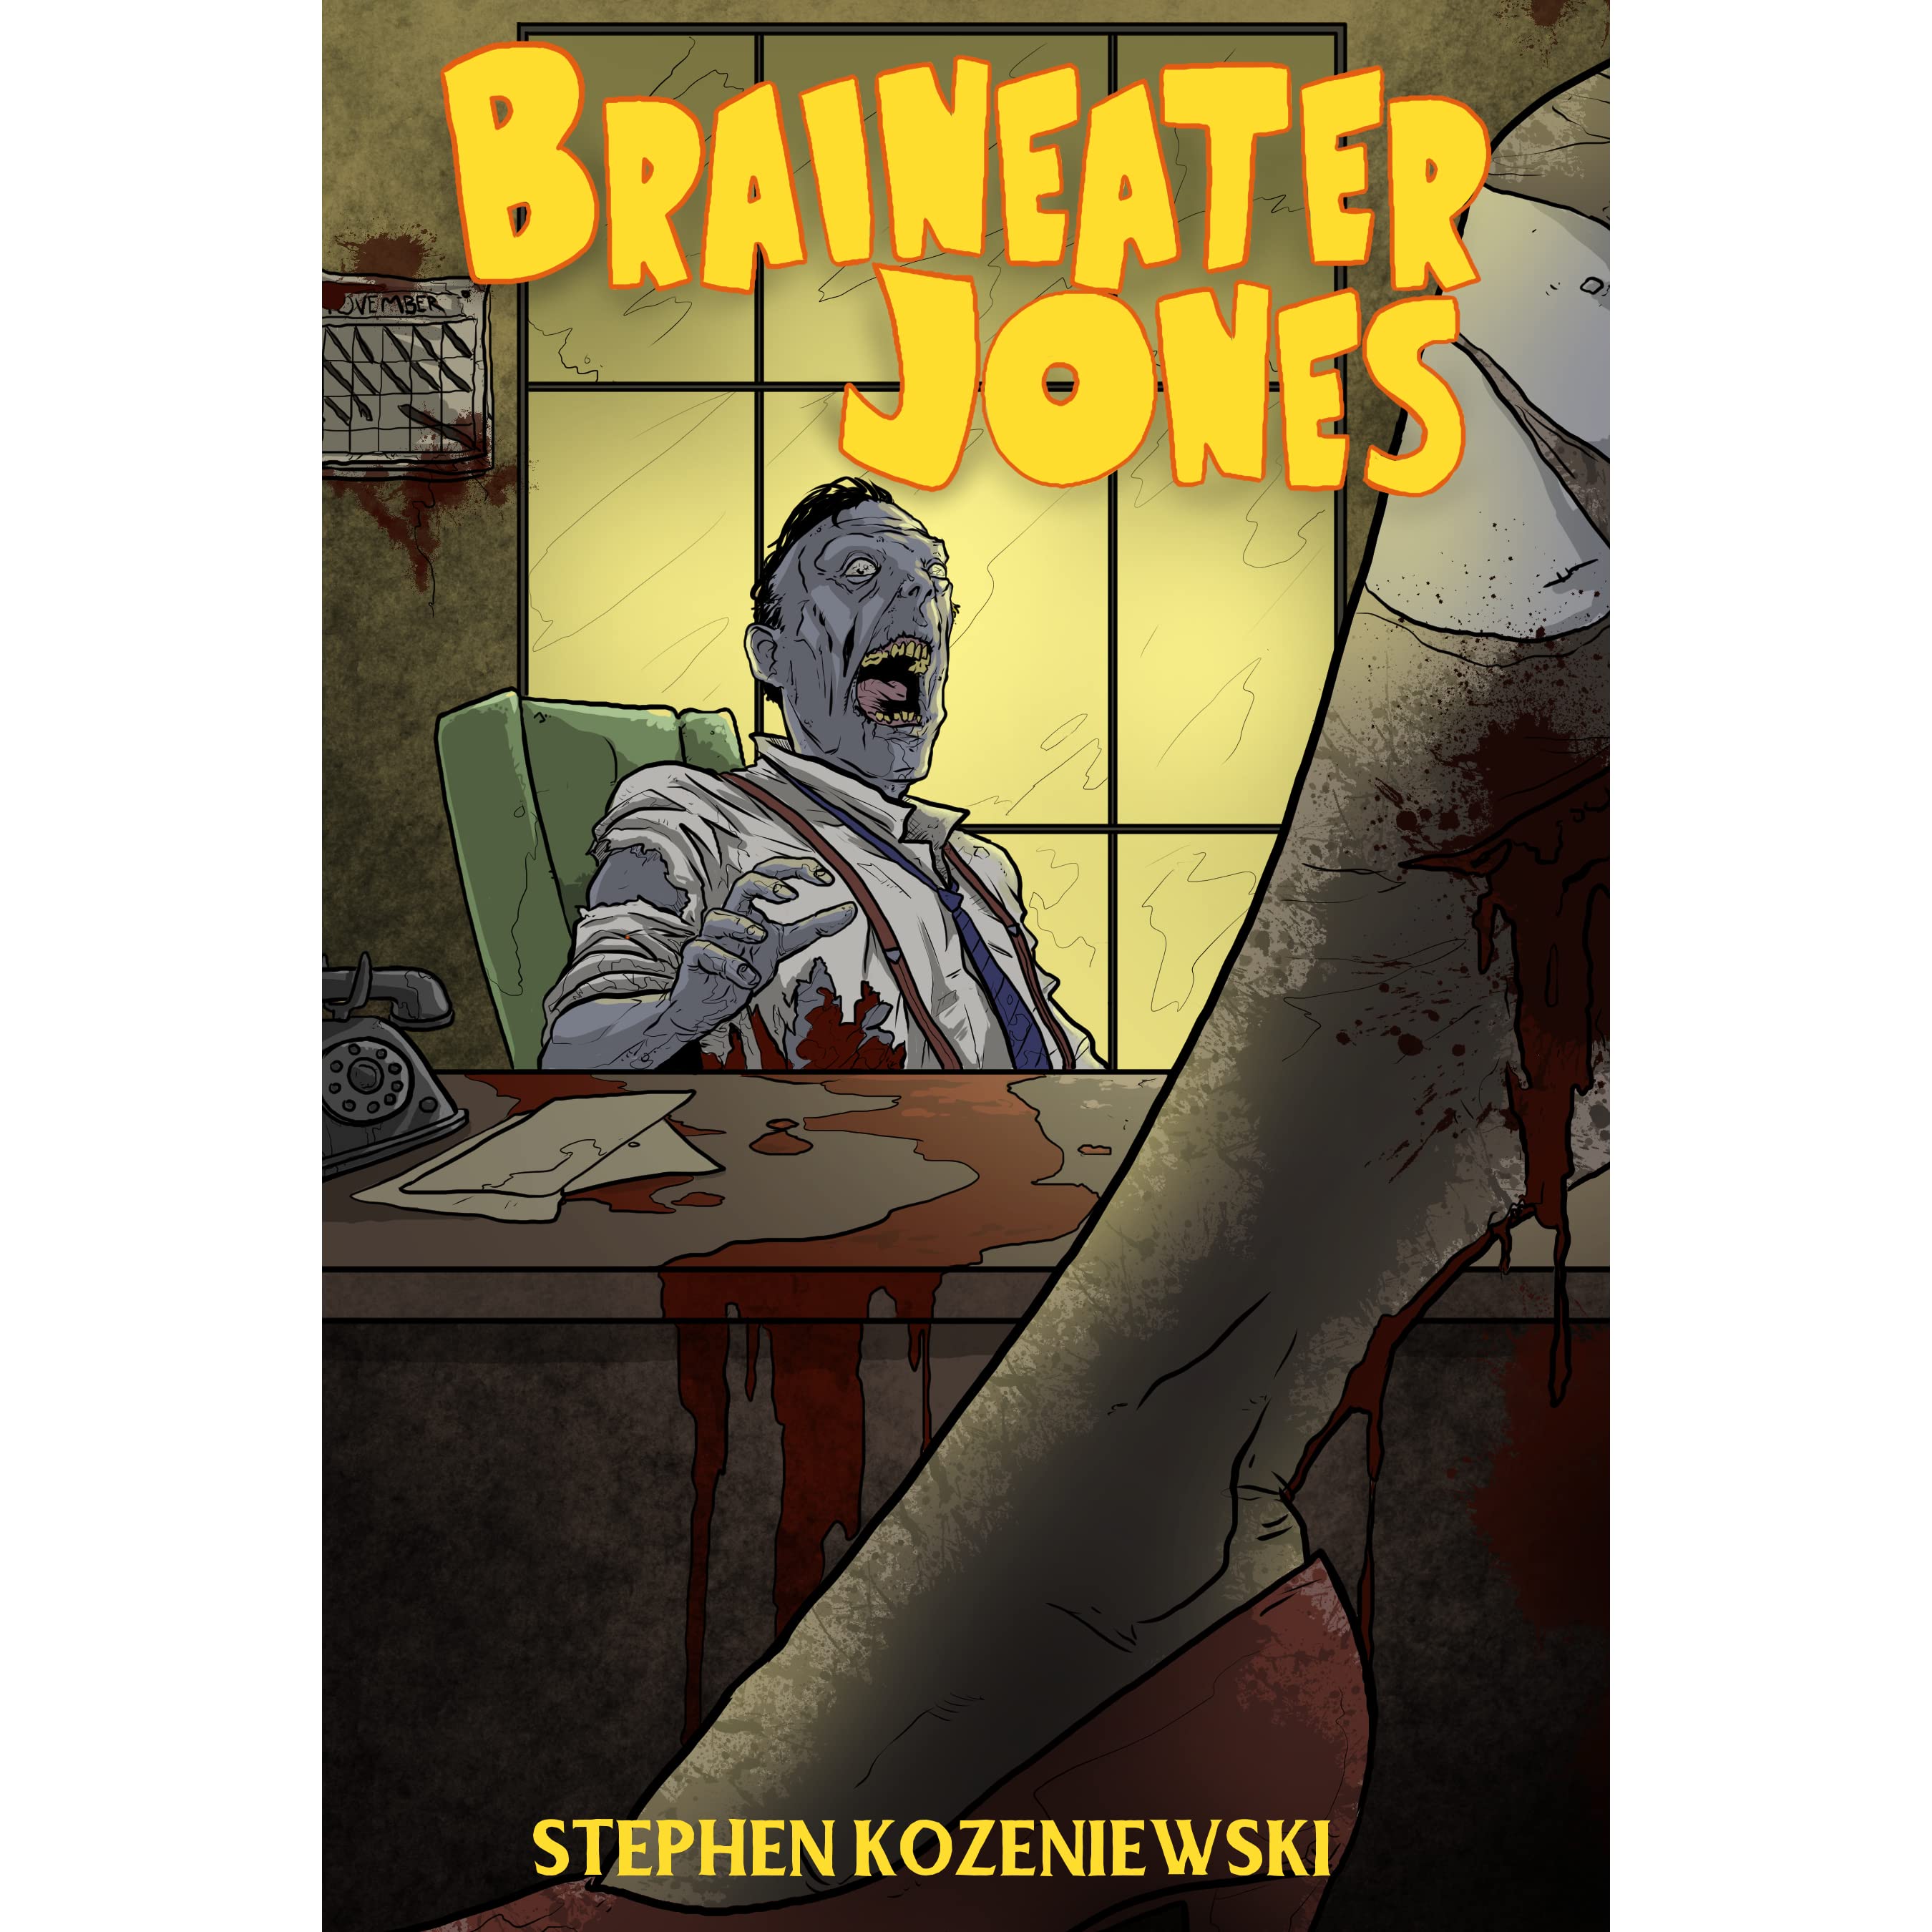 Braineater Jones